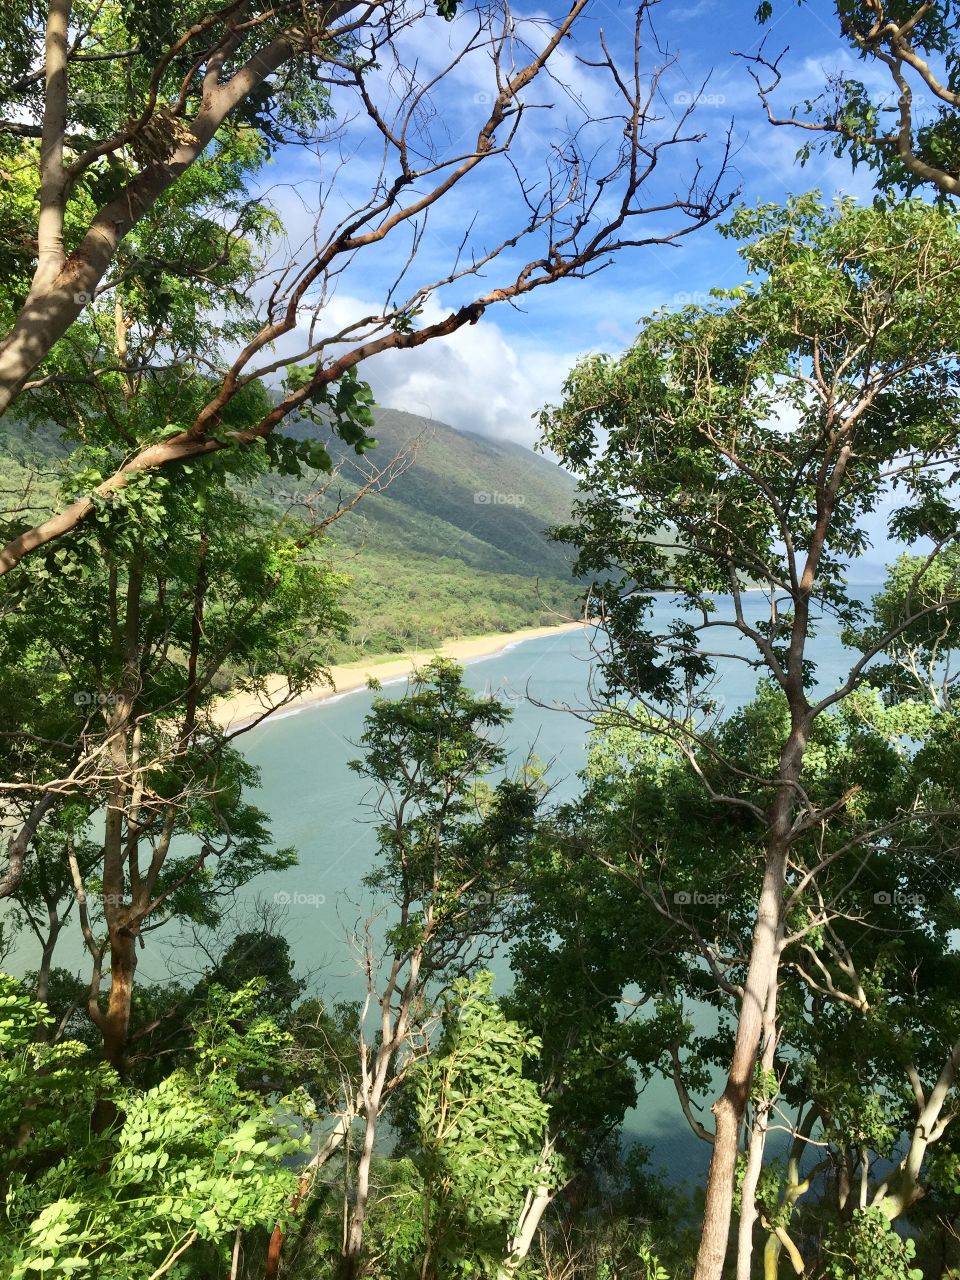 A quiet shoreline and lush rainforest mountain @ cairns 